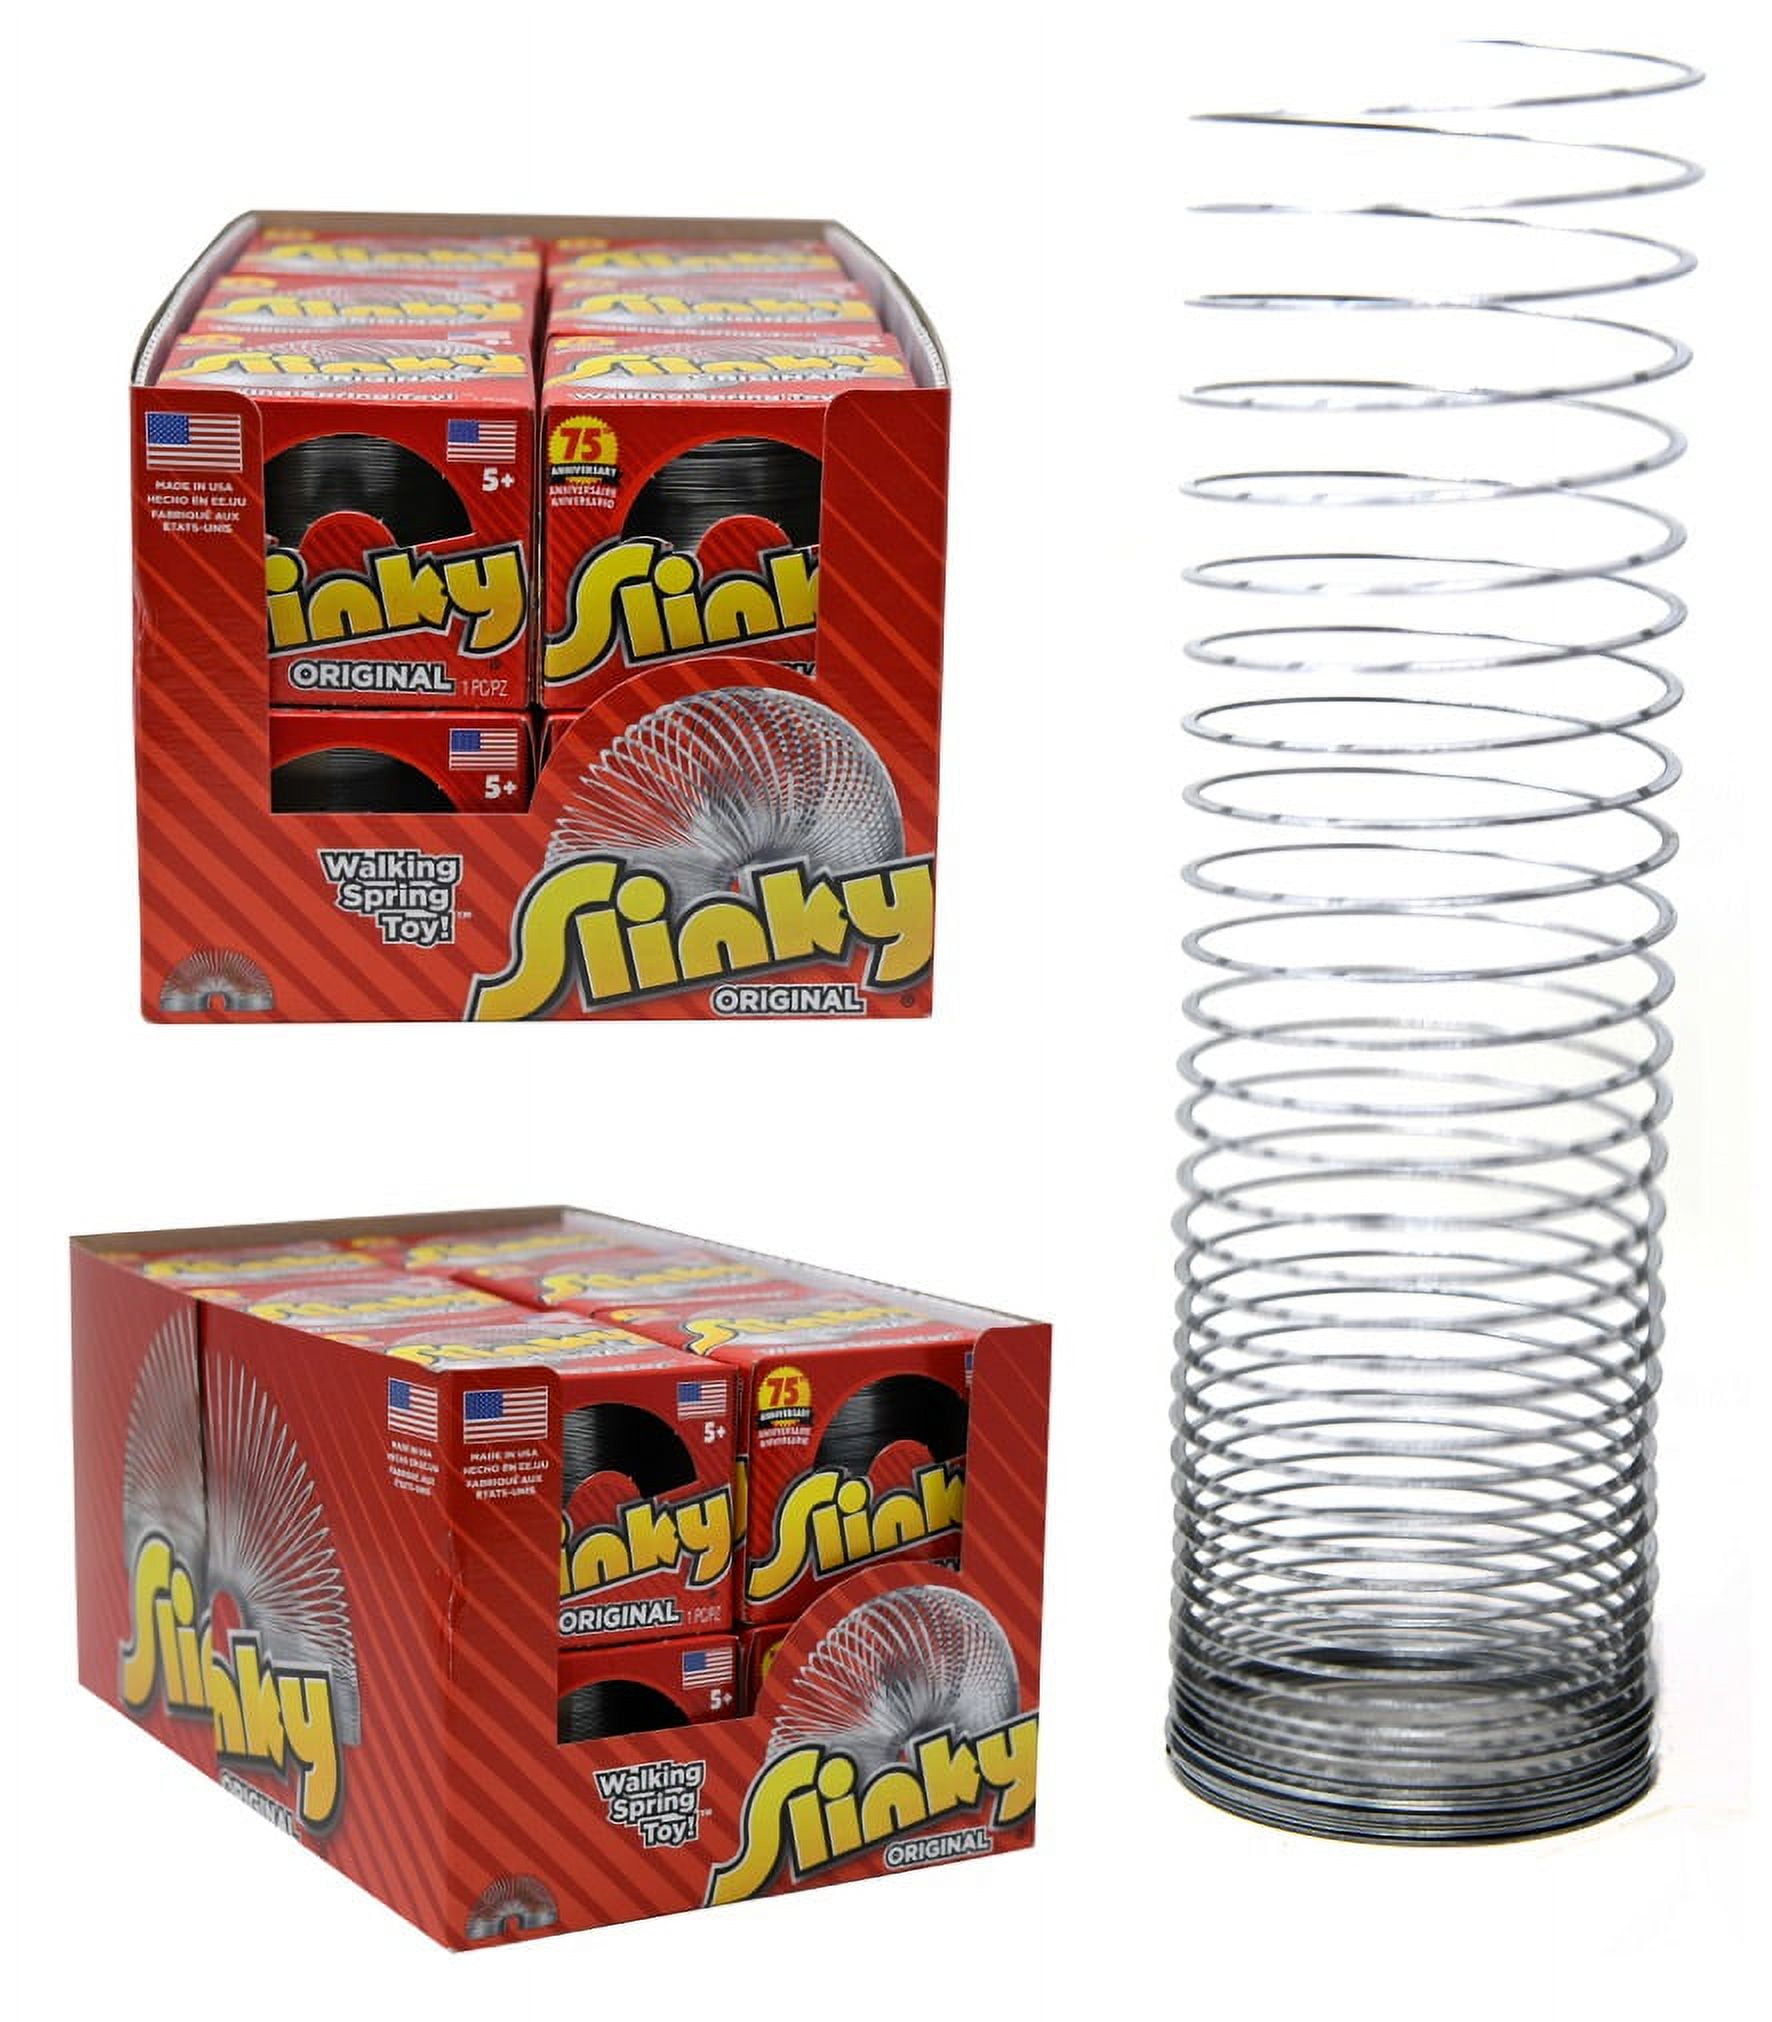 The Original Slinky